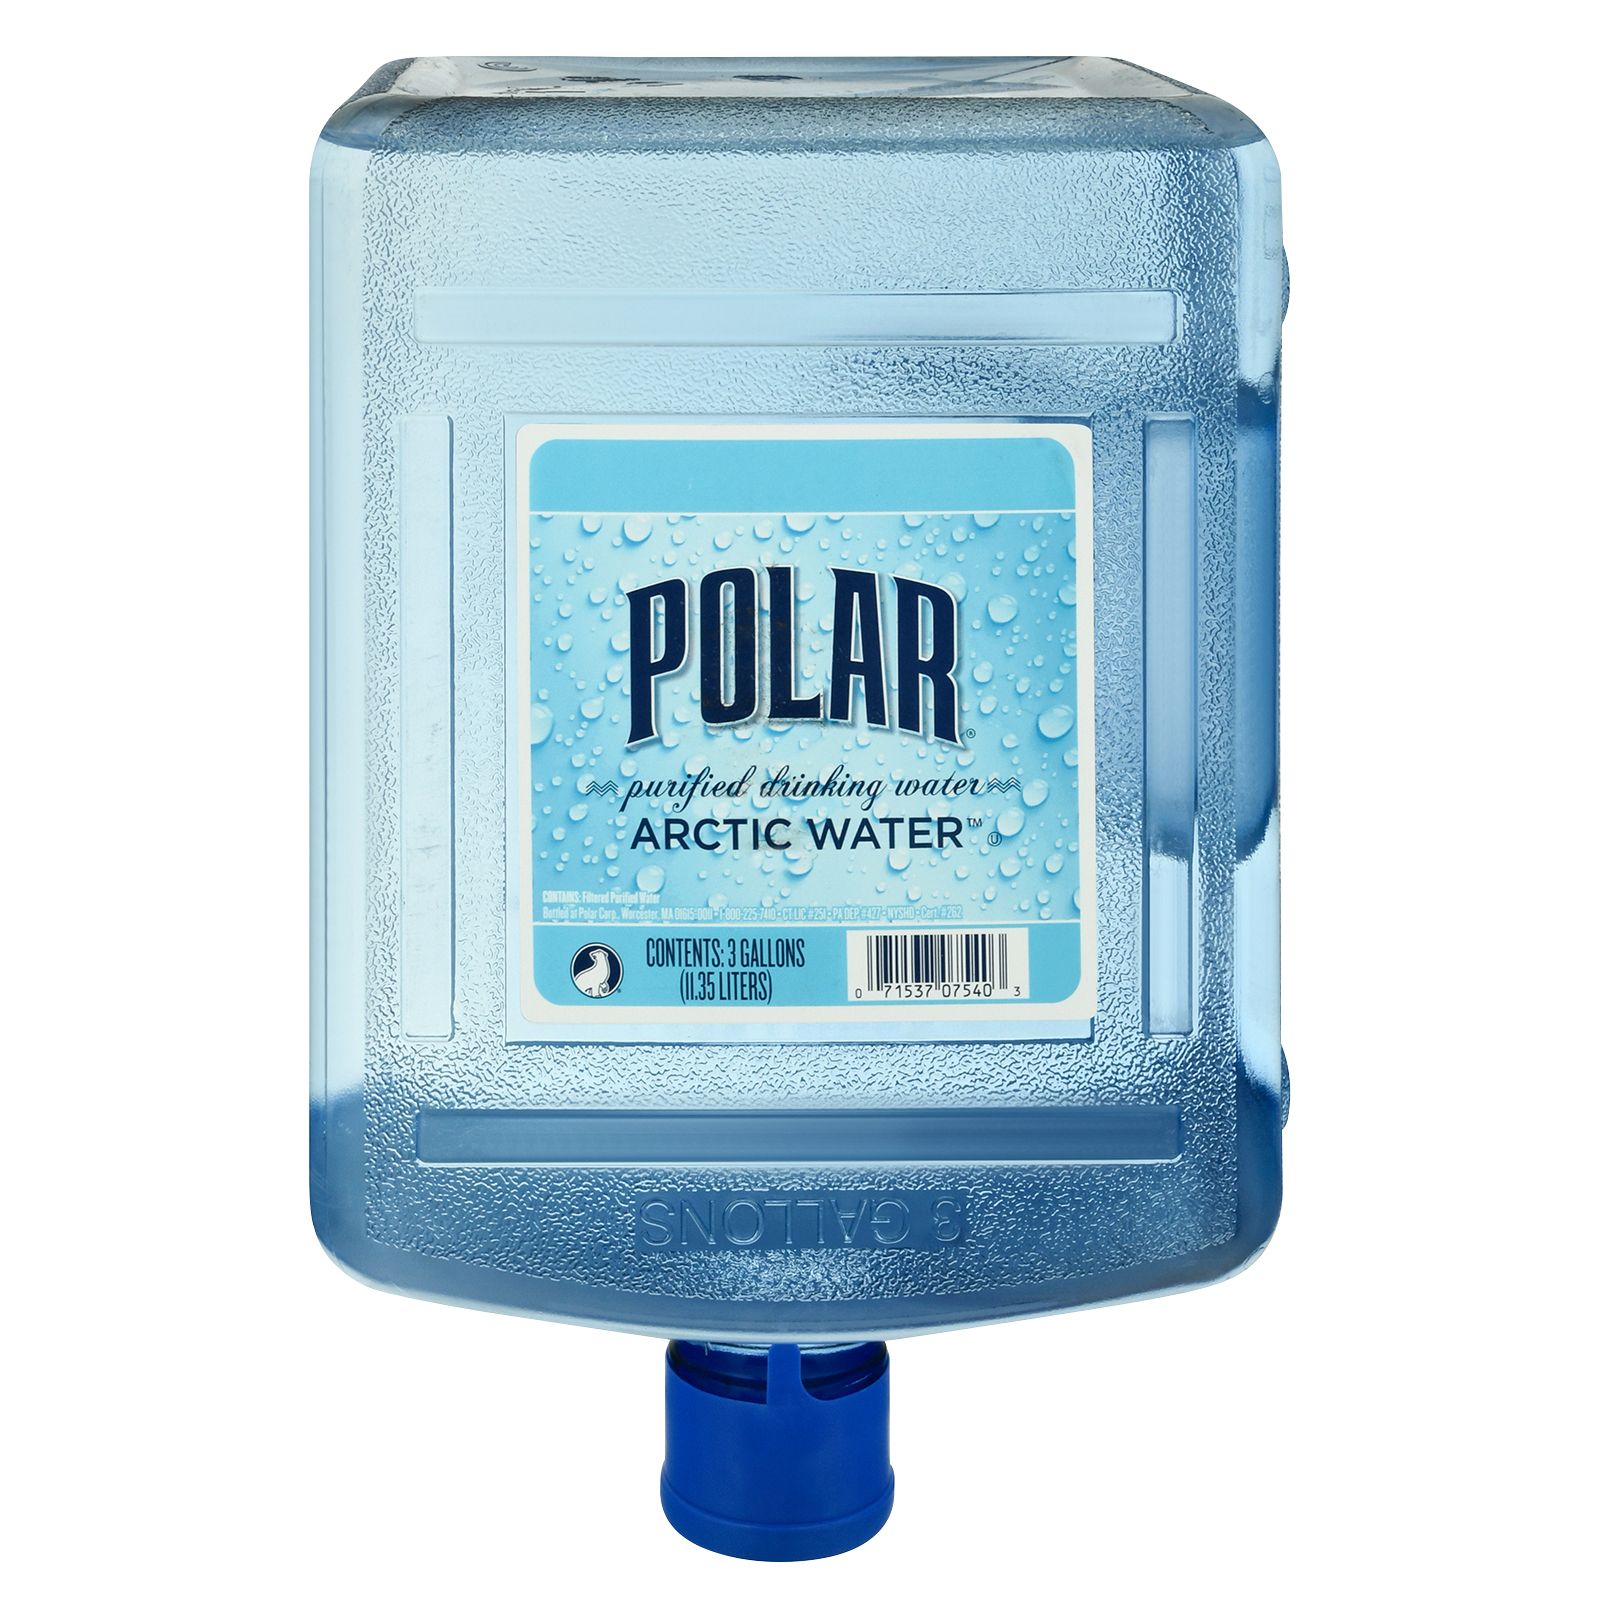 Polar Arctic Water, 5.28 gal.